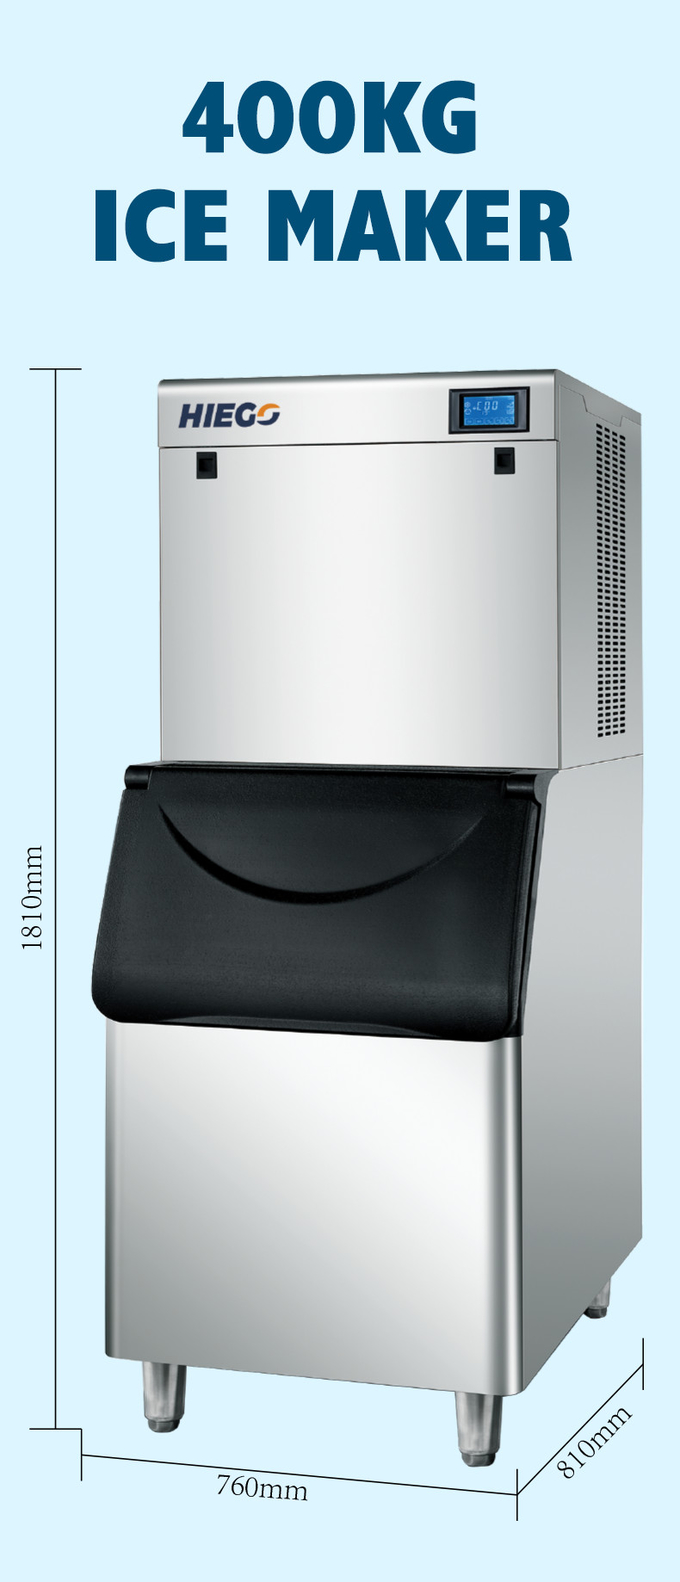 냉장고 400kg 스테인리스 자동적인 얼음 공 제작자를 위한 상업적인 아이스 큐브 제작자 7